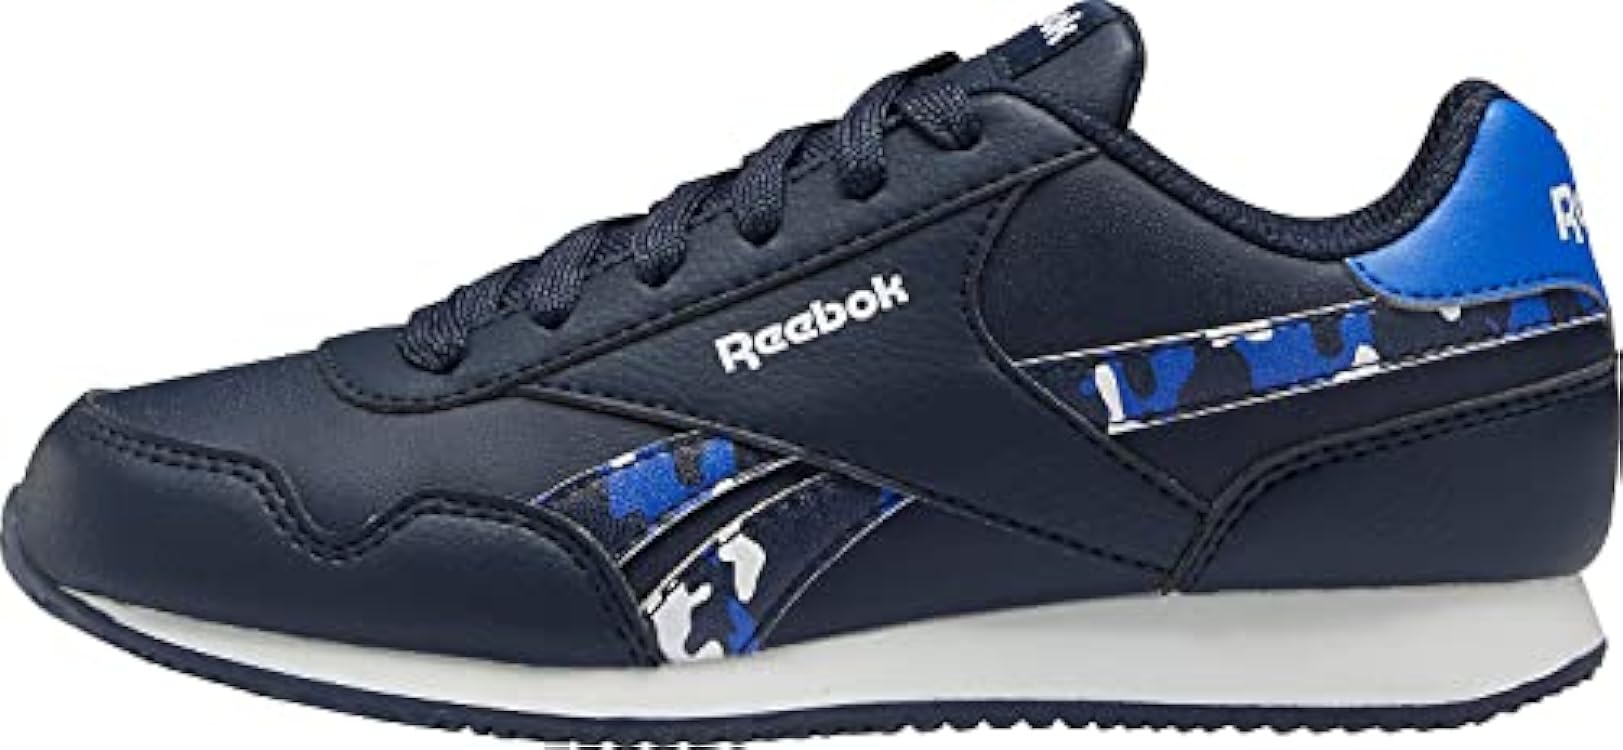 Reebok Royal Cl Jog 3.0, Sneaker Bambini e Ragazzi 1196